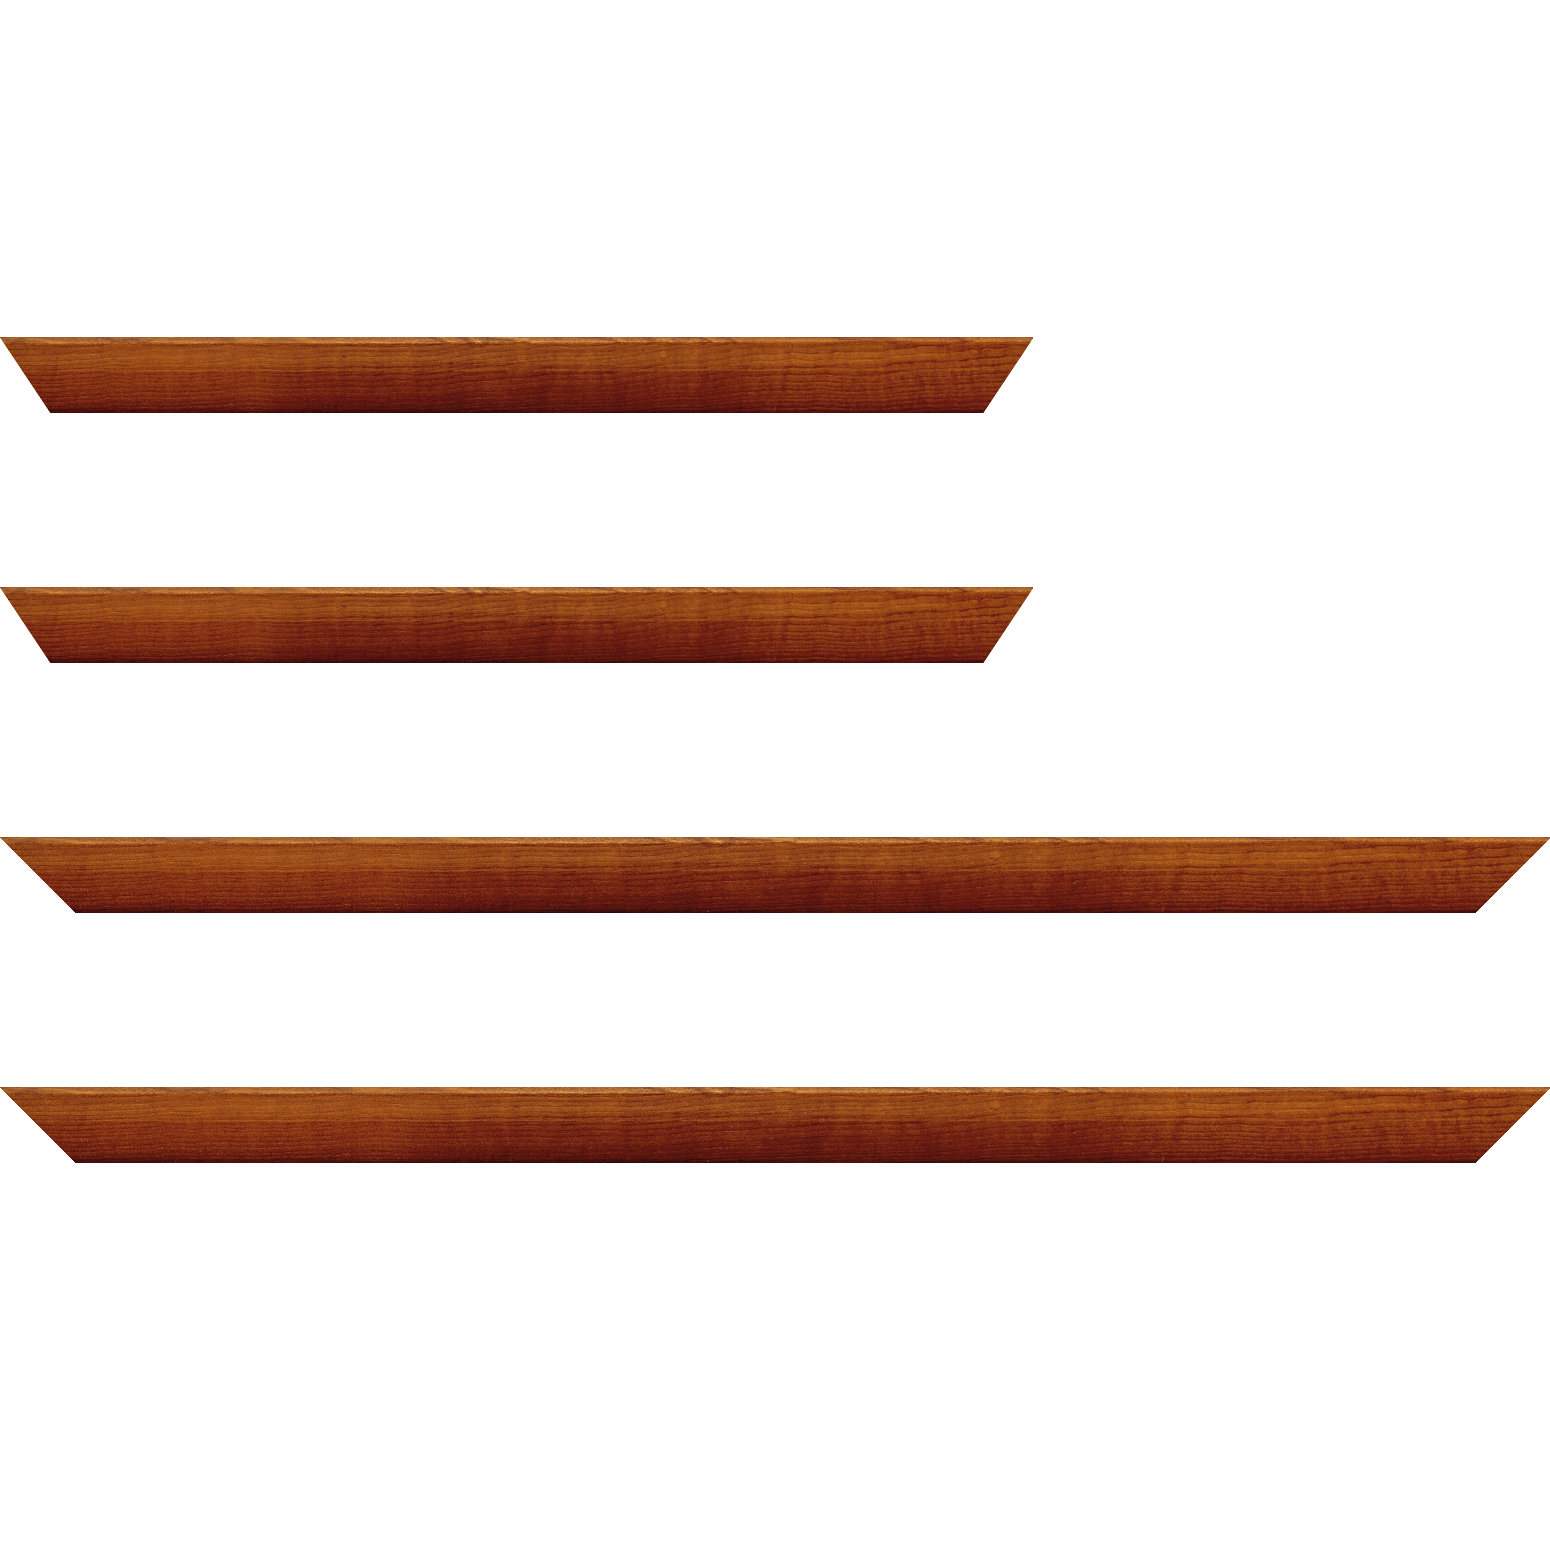 Baguette bois profil arrondi en pente plongeant largeur 2.4cm couleur marron miel finition vernis brillant,veine du bois  apparent (pin) , - 40x60